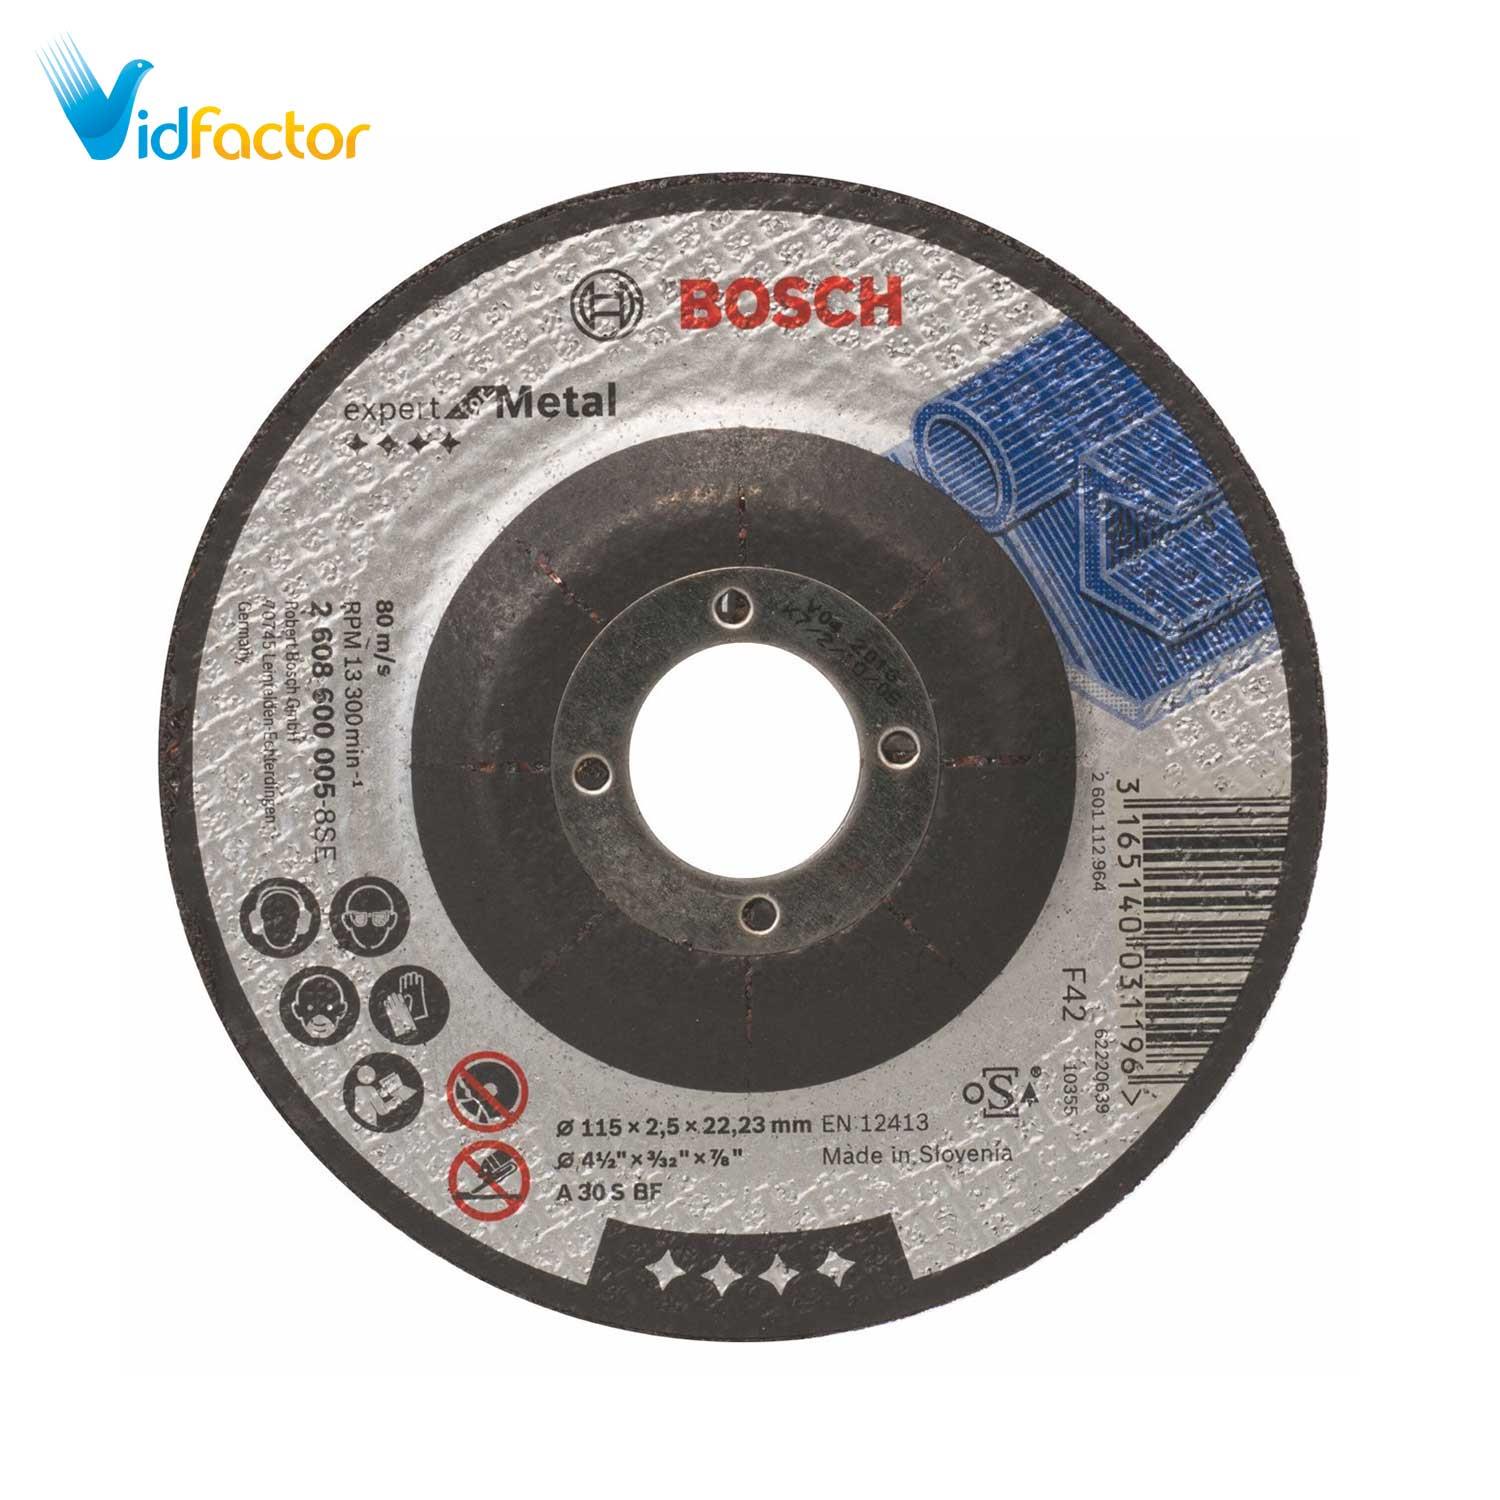 صفحه برش  فلز محدب Bosch D115x2.5x22.2  2608600005